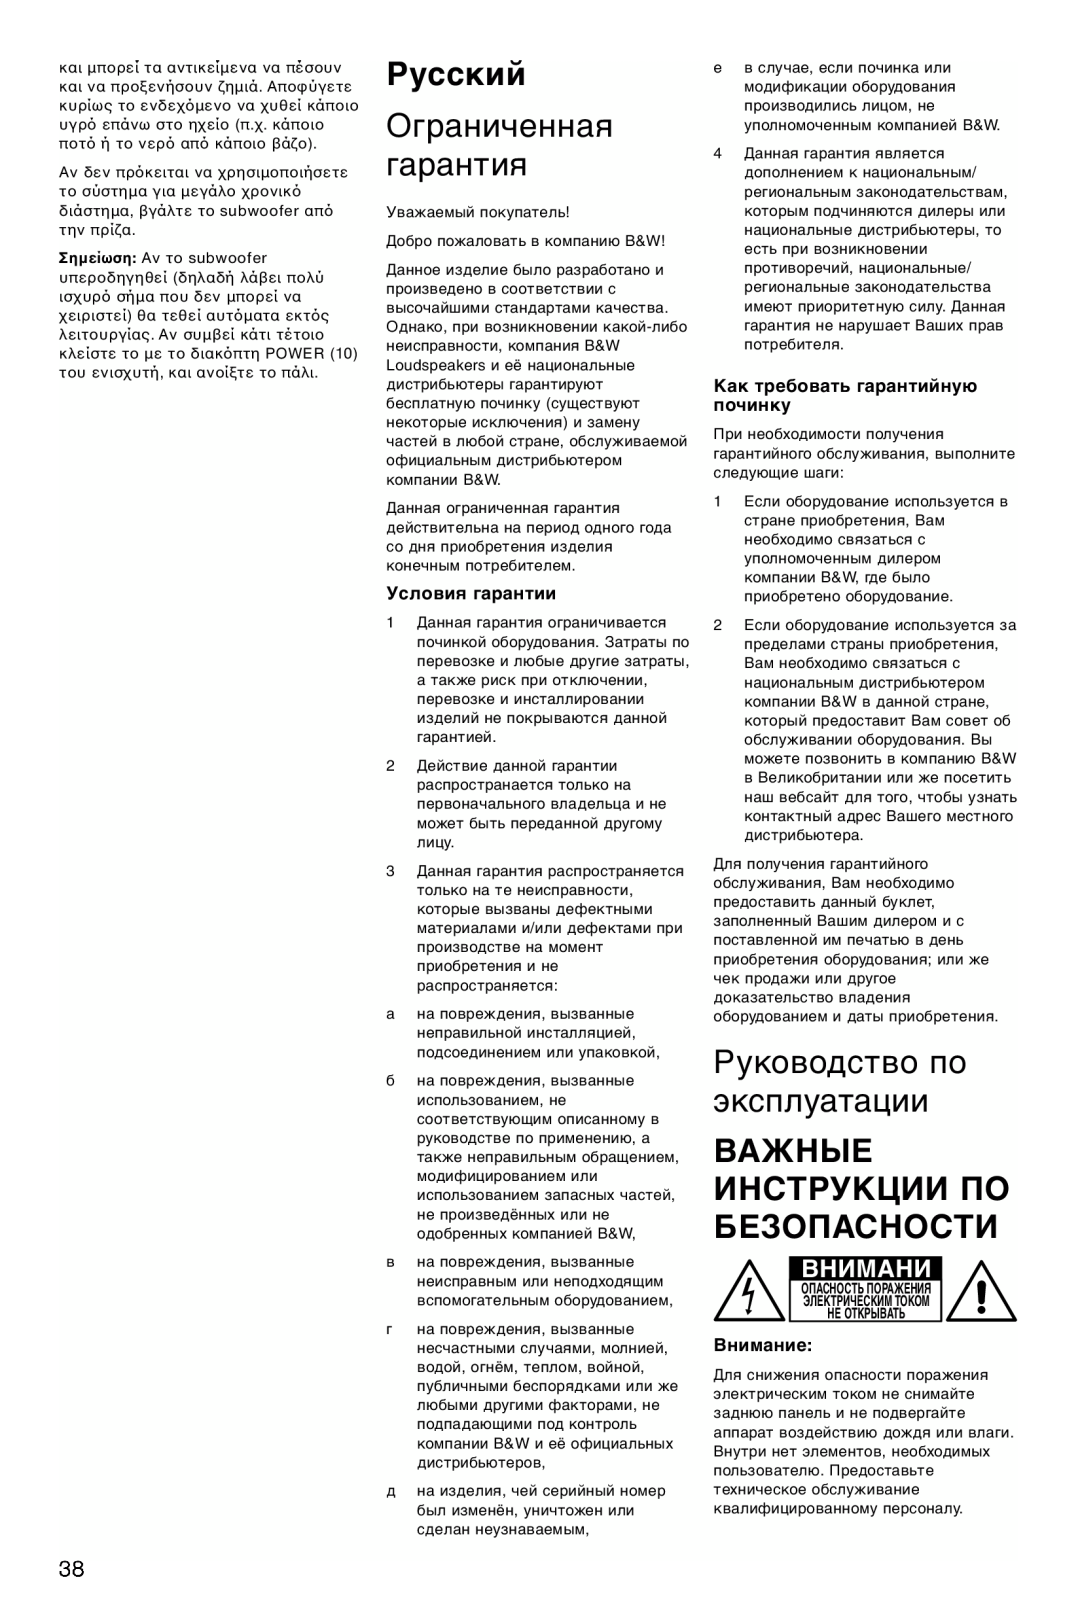 Bowers & Wilkins ASW675 Русский, Ограниченная гарантия, Руководство по эксплуатации, Важные Инструкции По Безопасности 